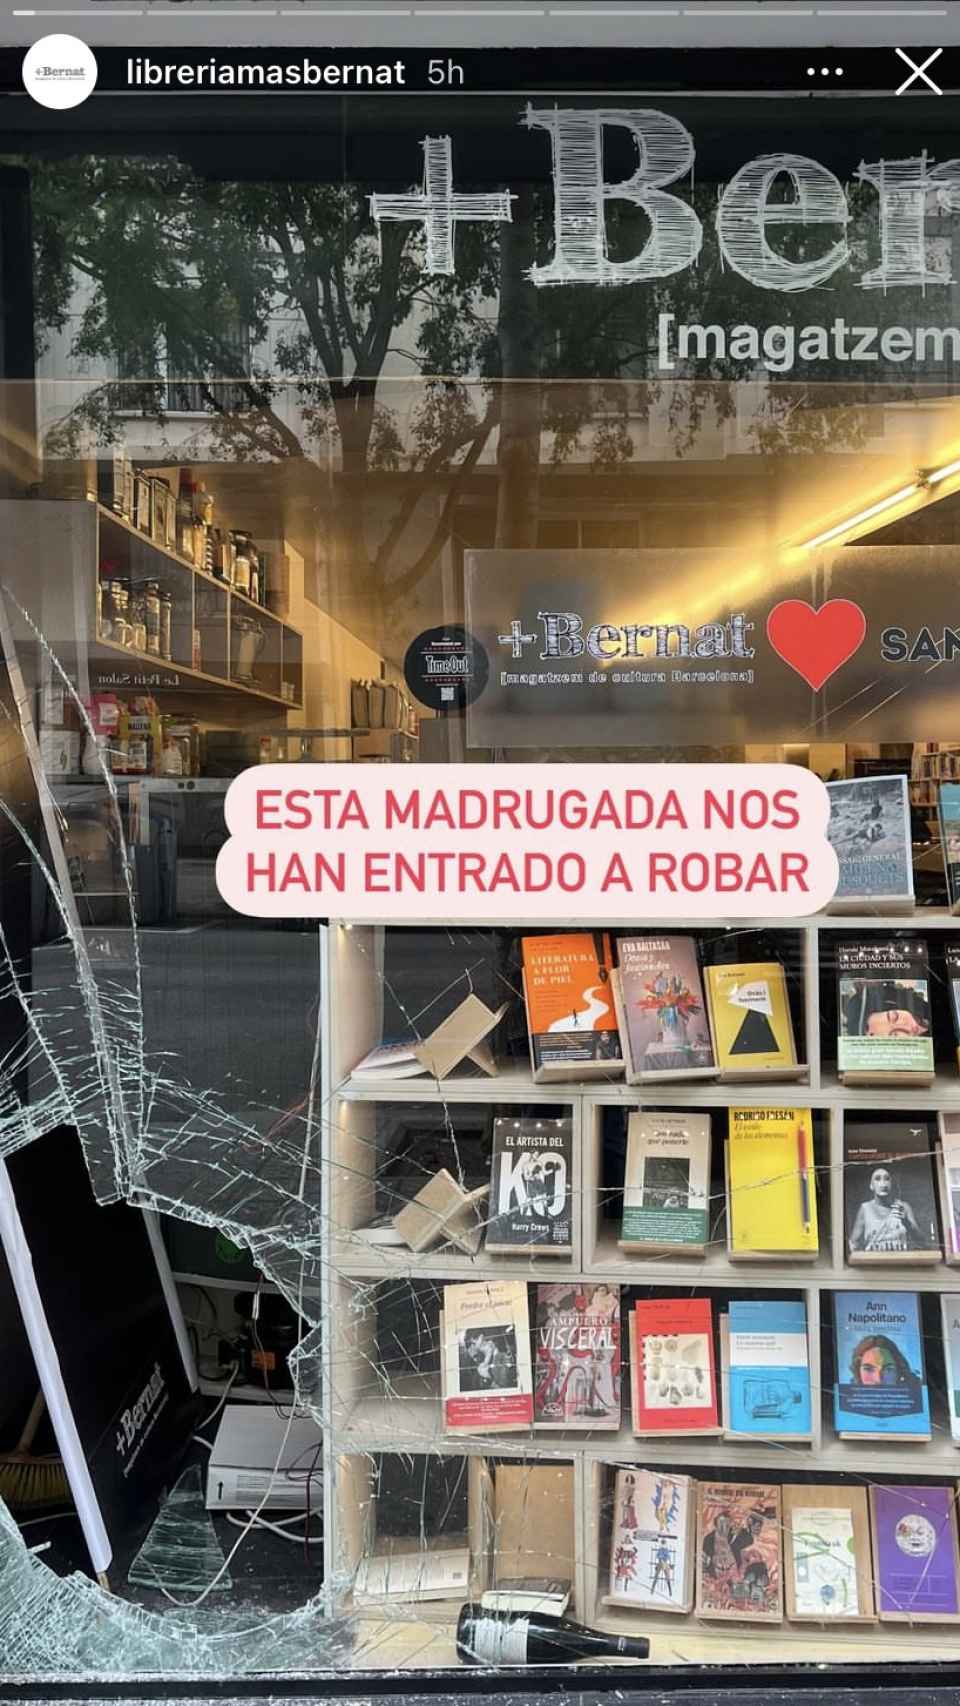 La librería +Bernat, de la que es socia Mercerdes Milà, tras el robo